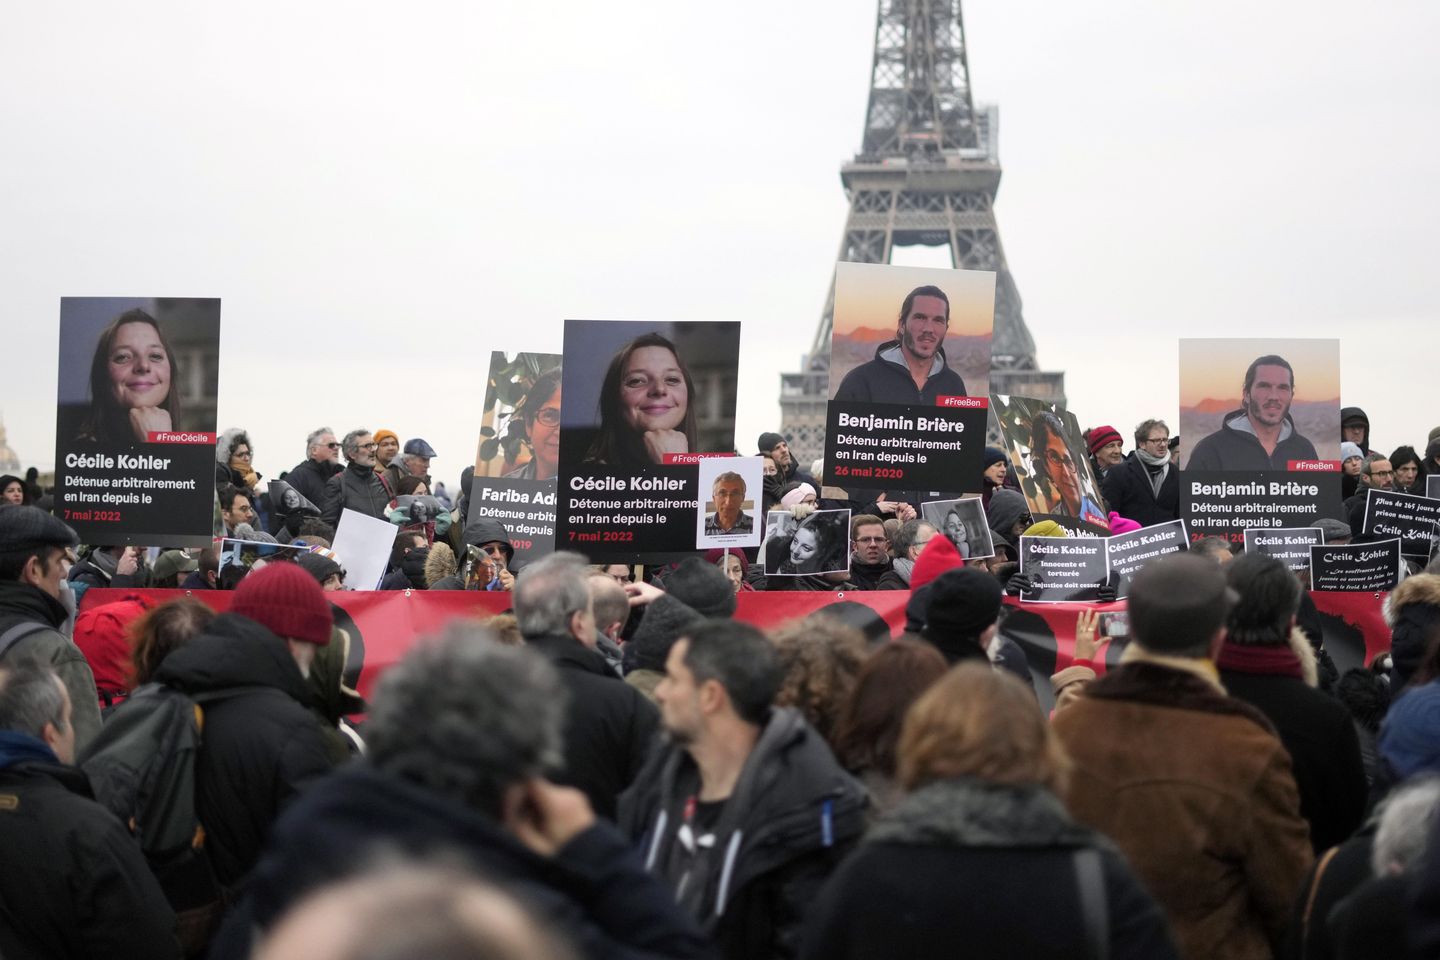 Fransa, İran'da tutuklu bulunan 2 vatandaşın serbest bırakıldığını, Paris'e gitmek üzere yola çıktığını söyledi.